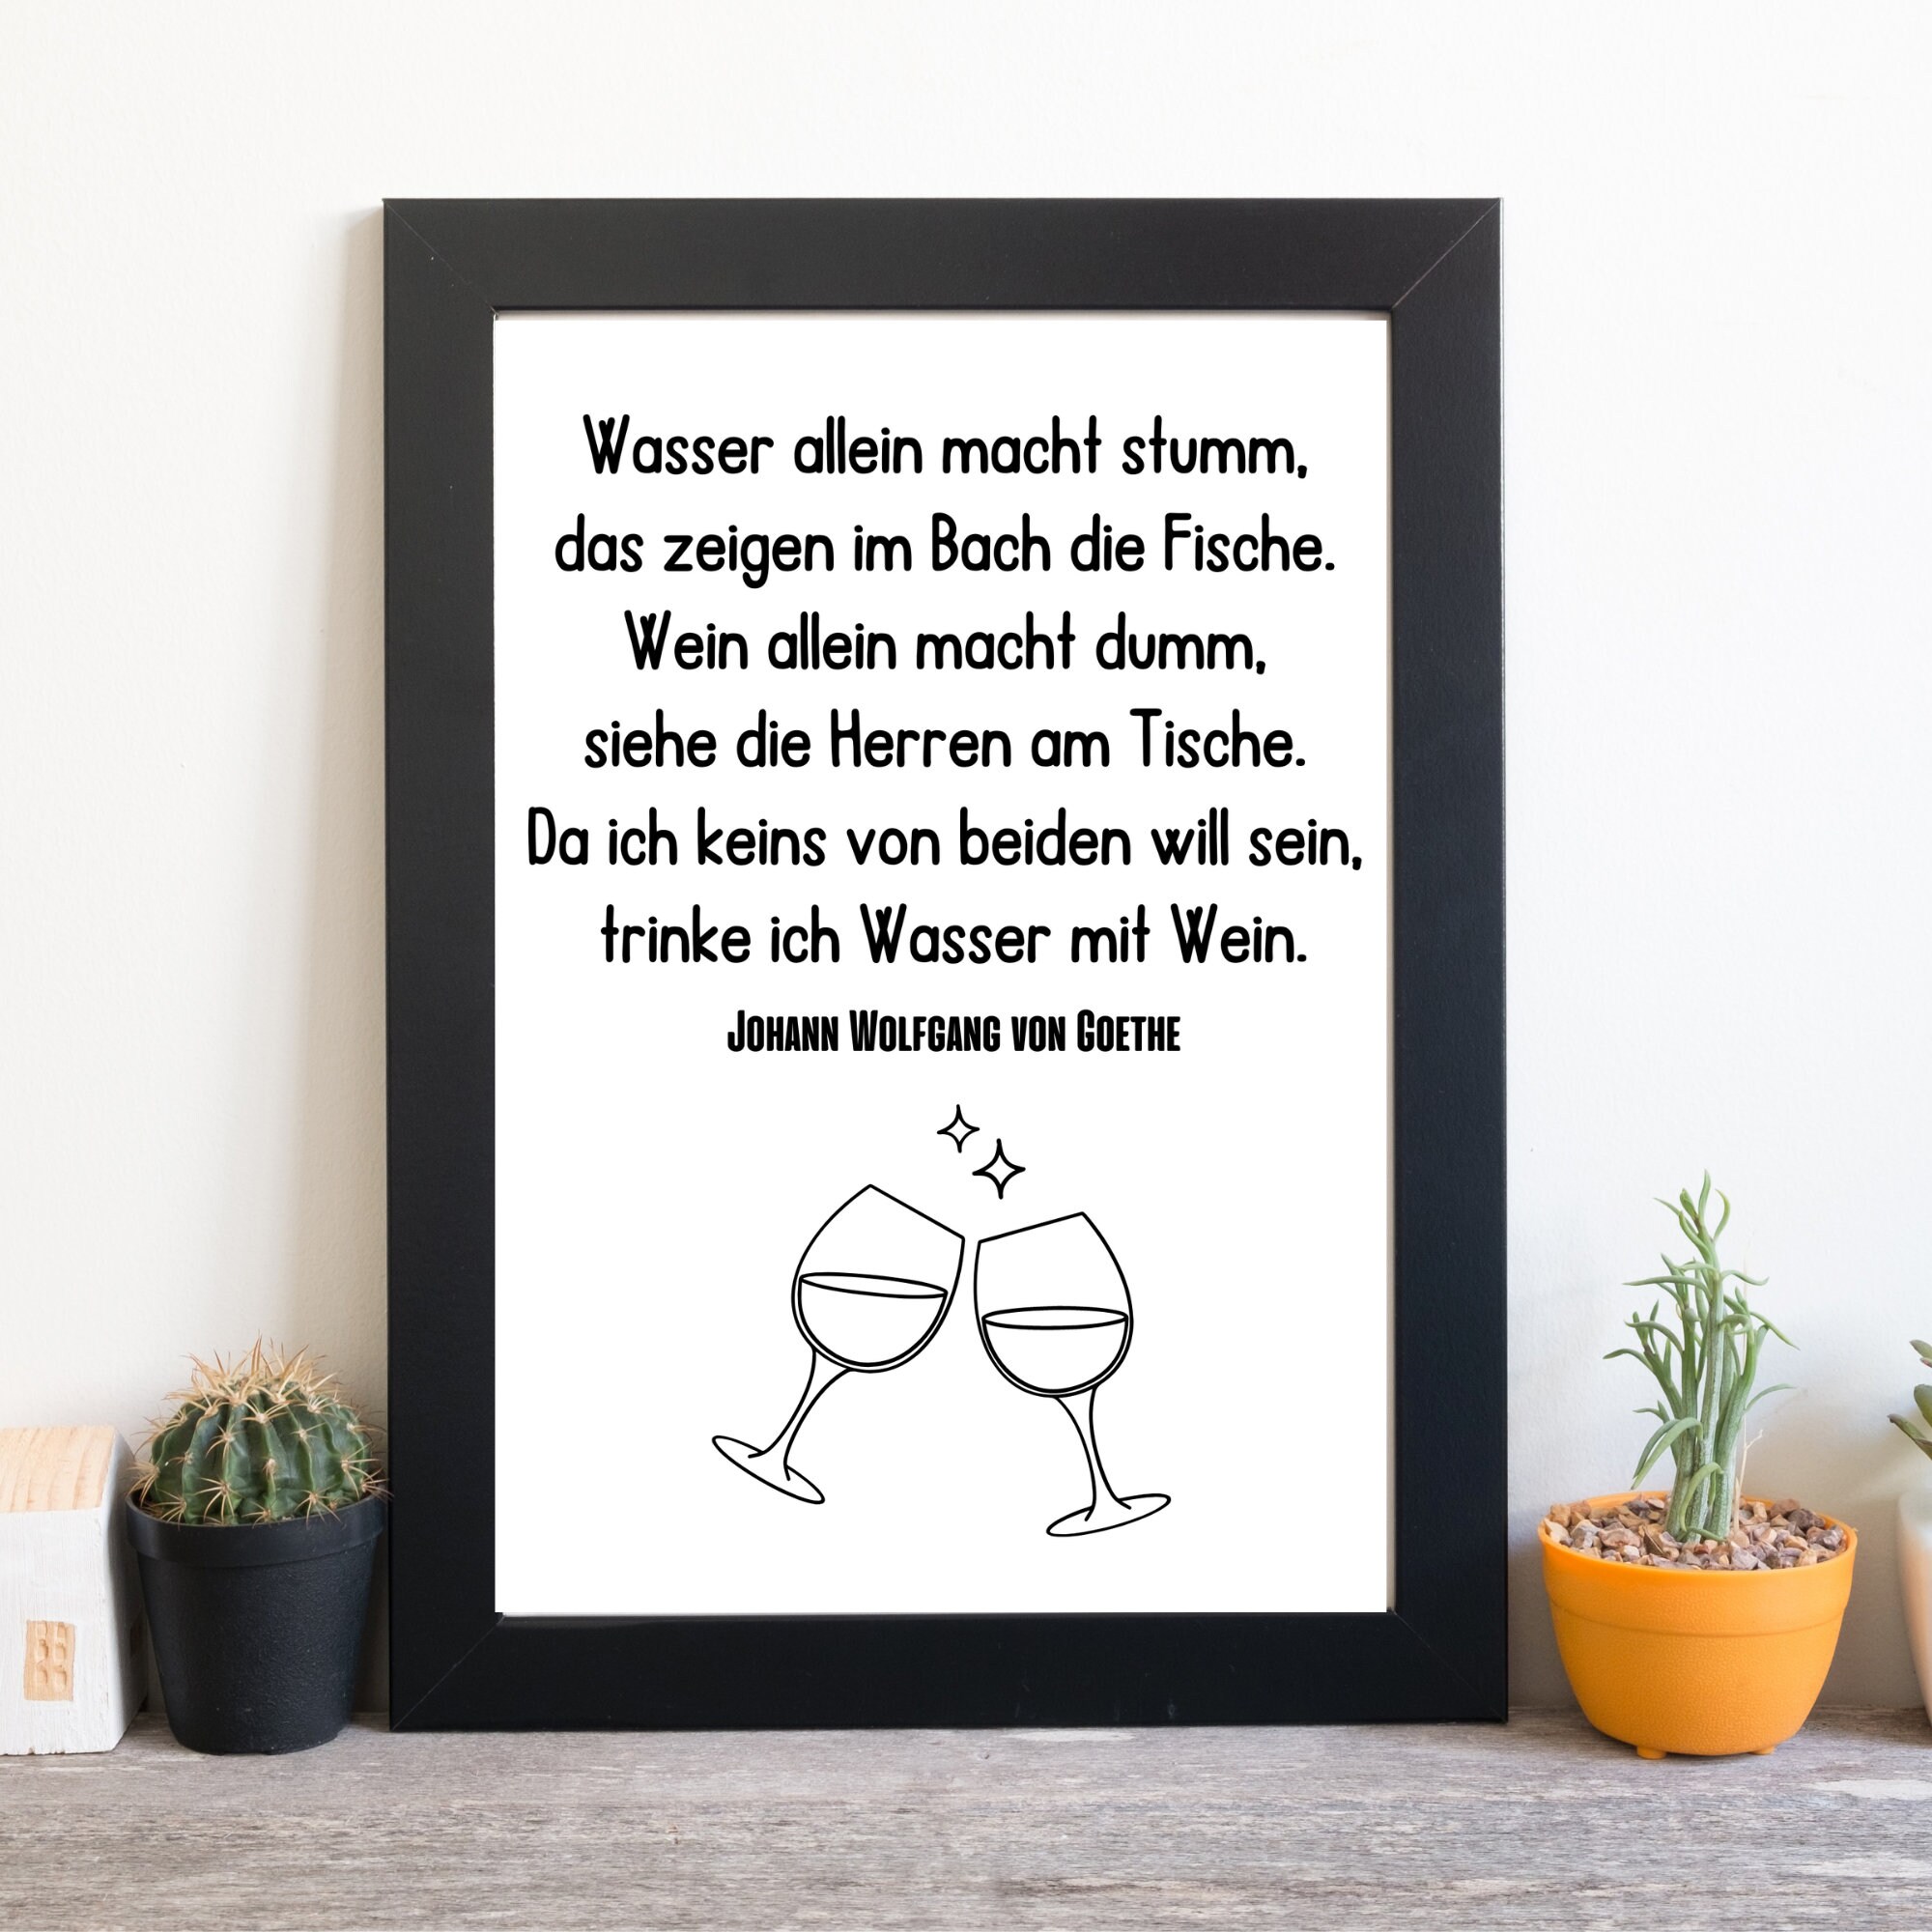 Din A4 Kunstdruck ohne Rahmen Zitat Spruch Goethe Weinschorle Wein Vino  Küche Esszimmer Bar Druck Poster Bild - Etsy.de